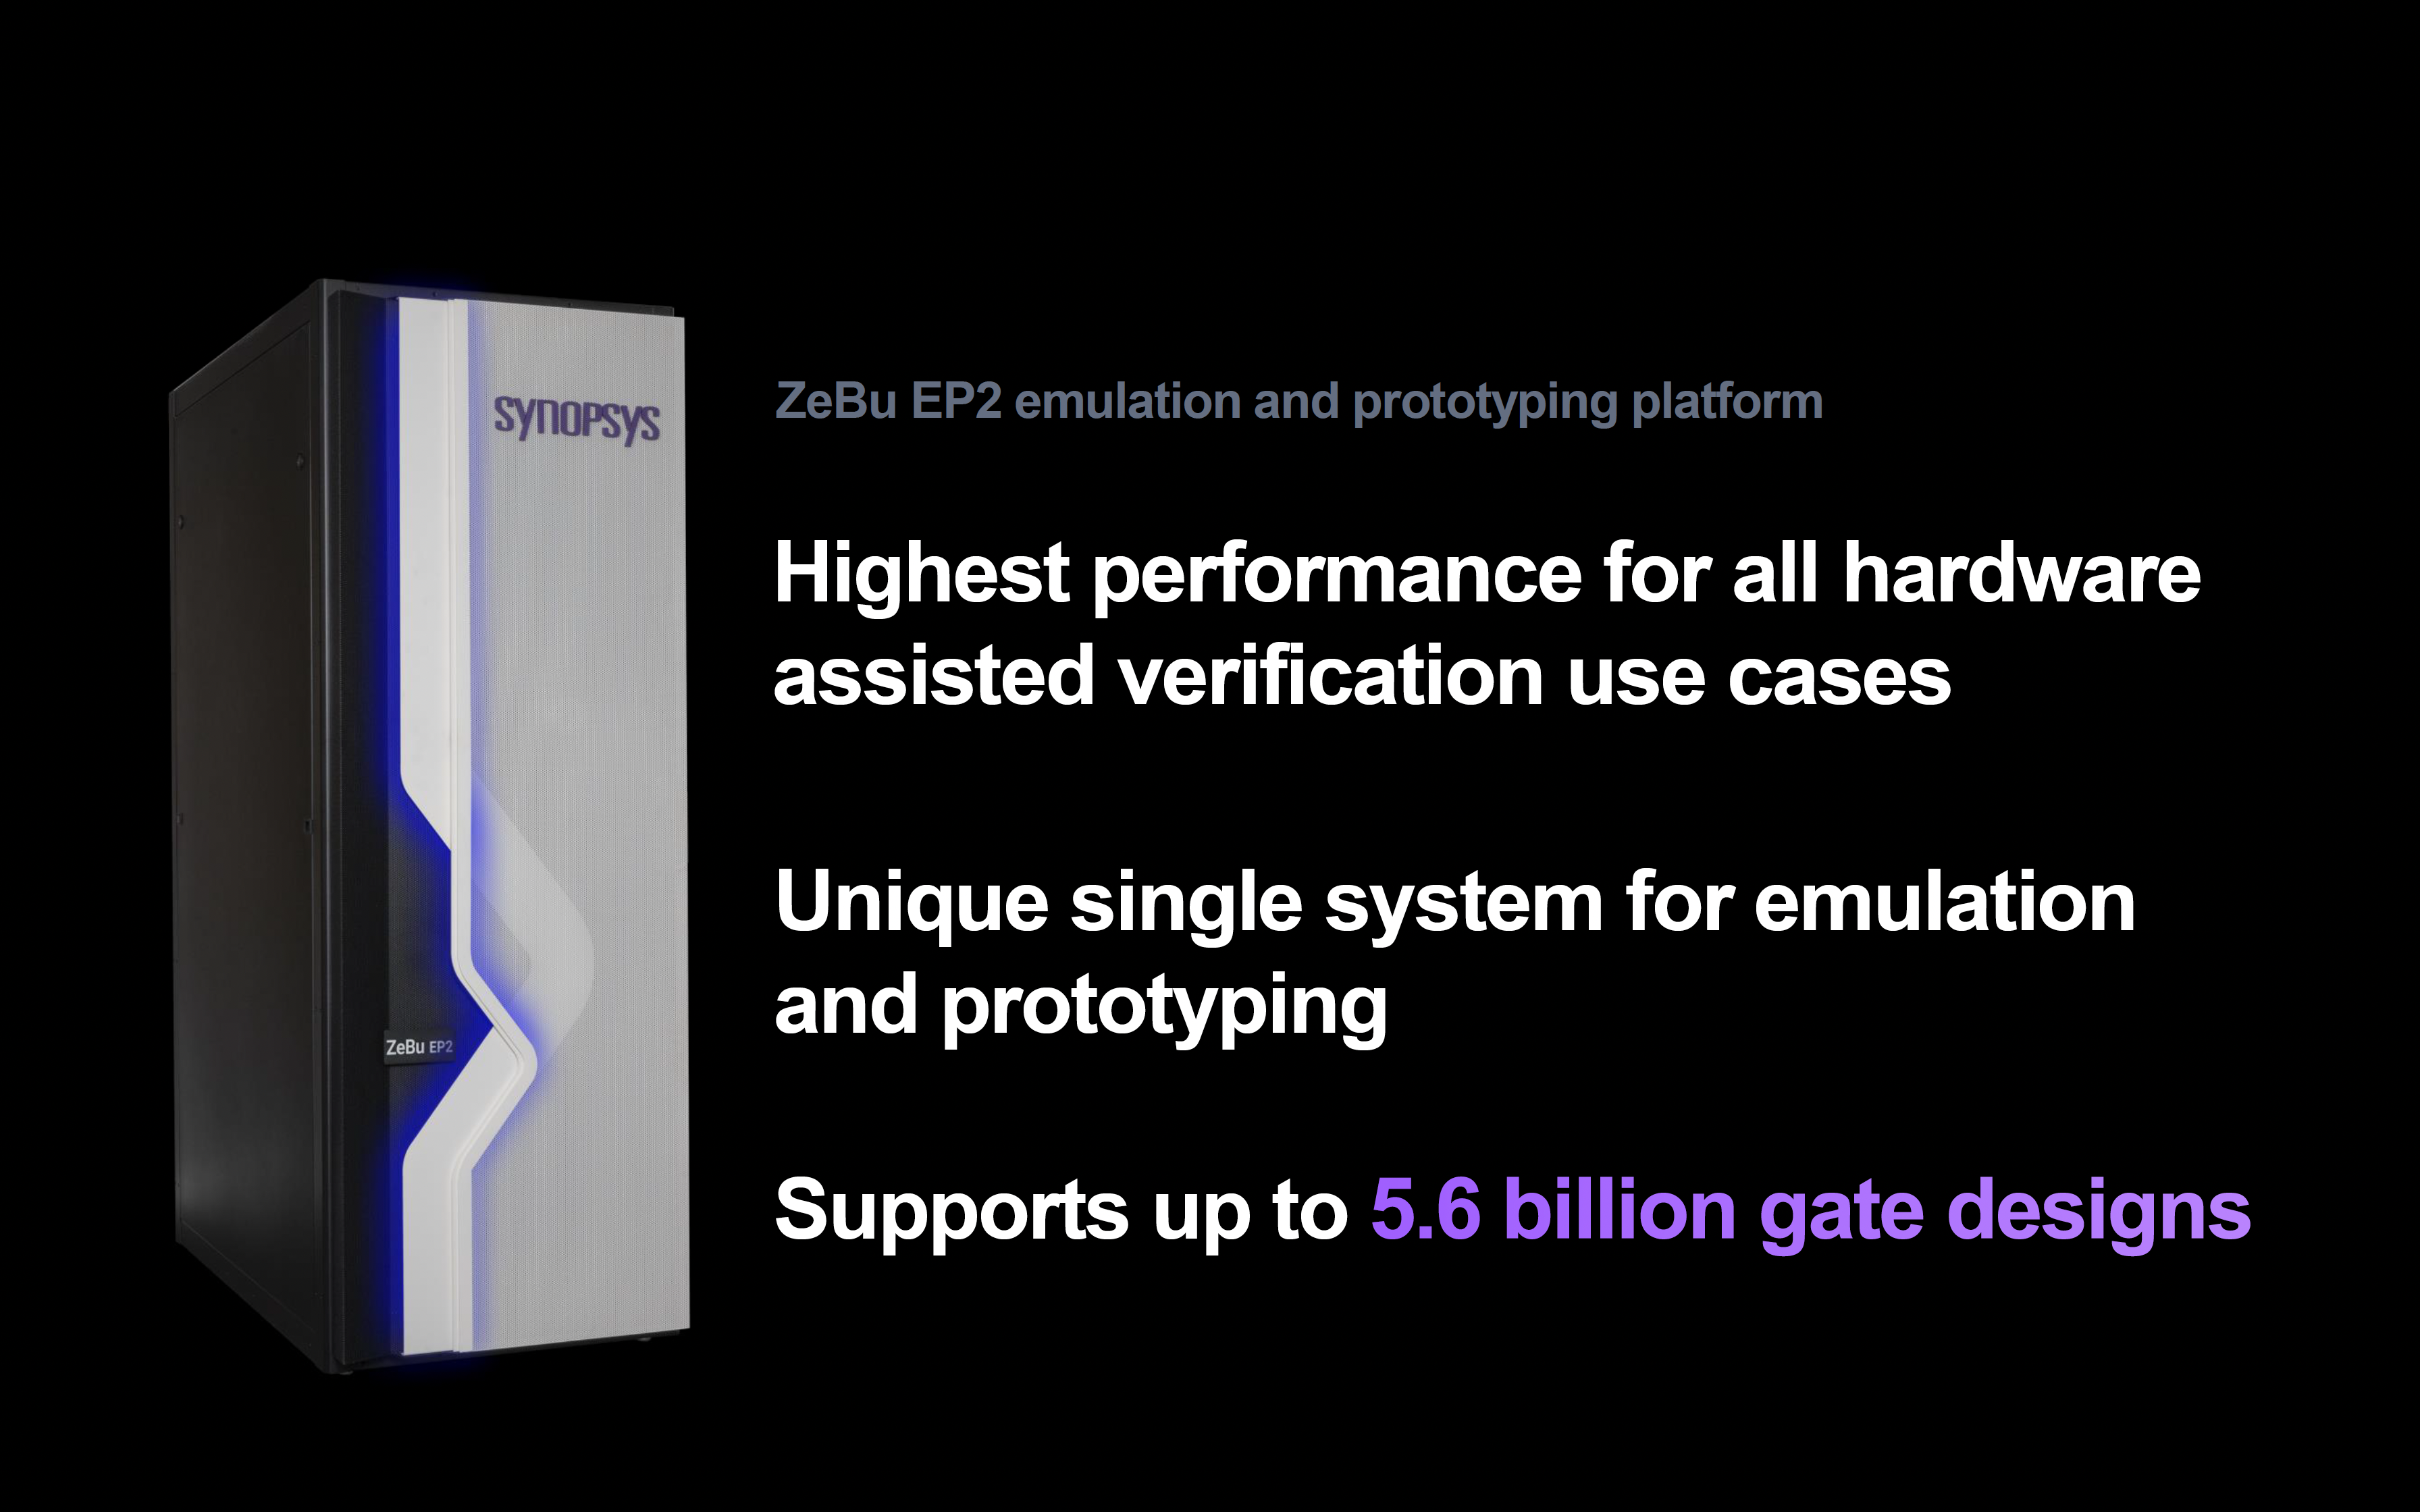 Zebu EP2 emulation and prototyping platform